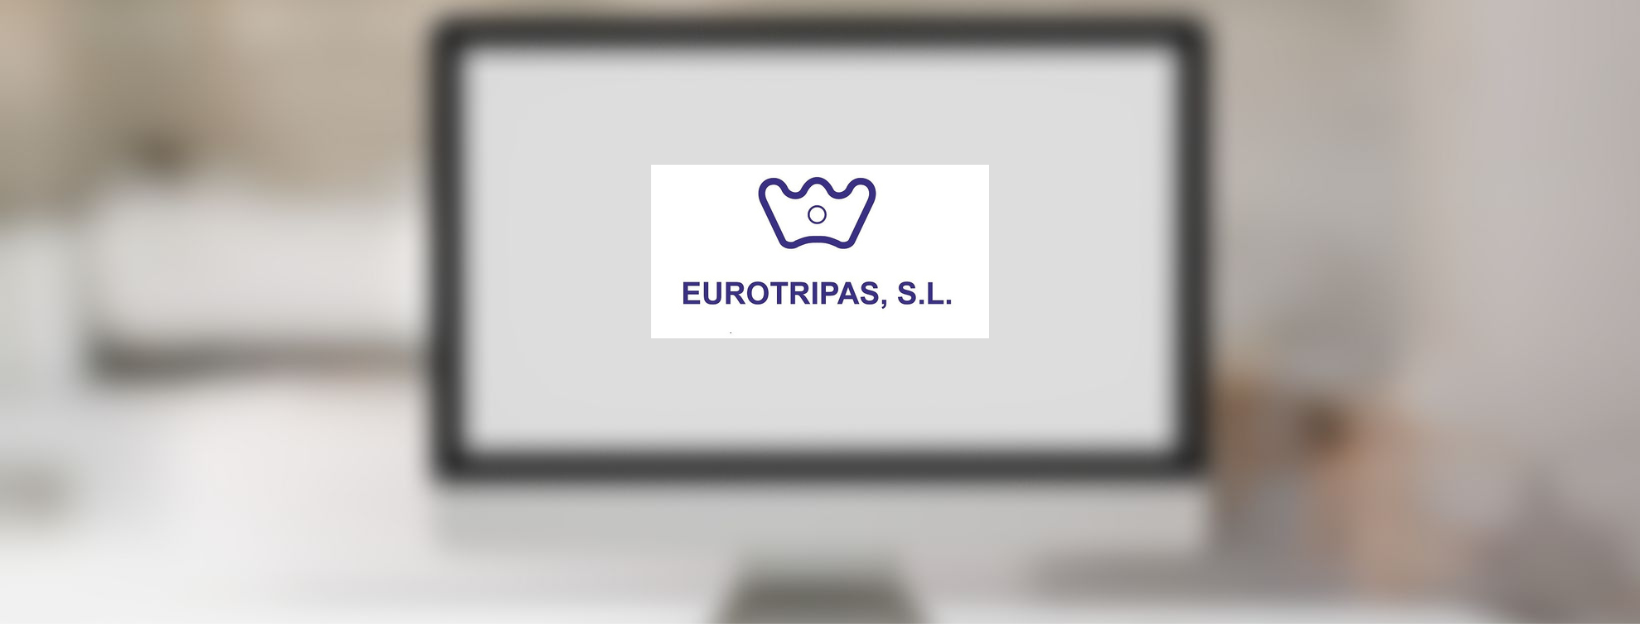 Nueva página web para Eurotripas, S.L.